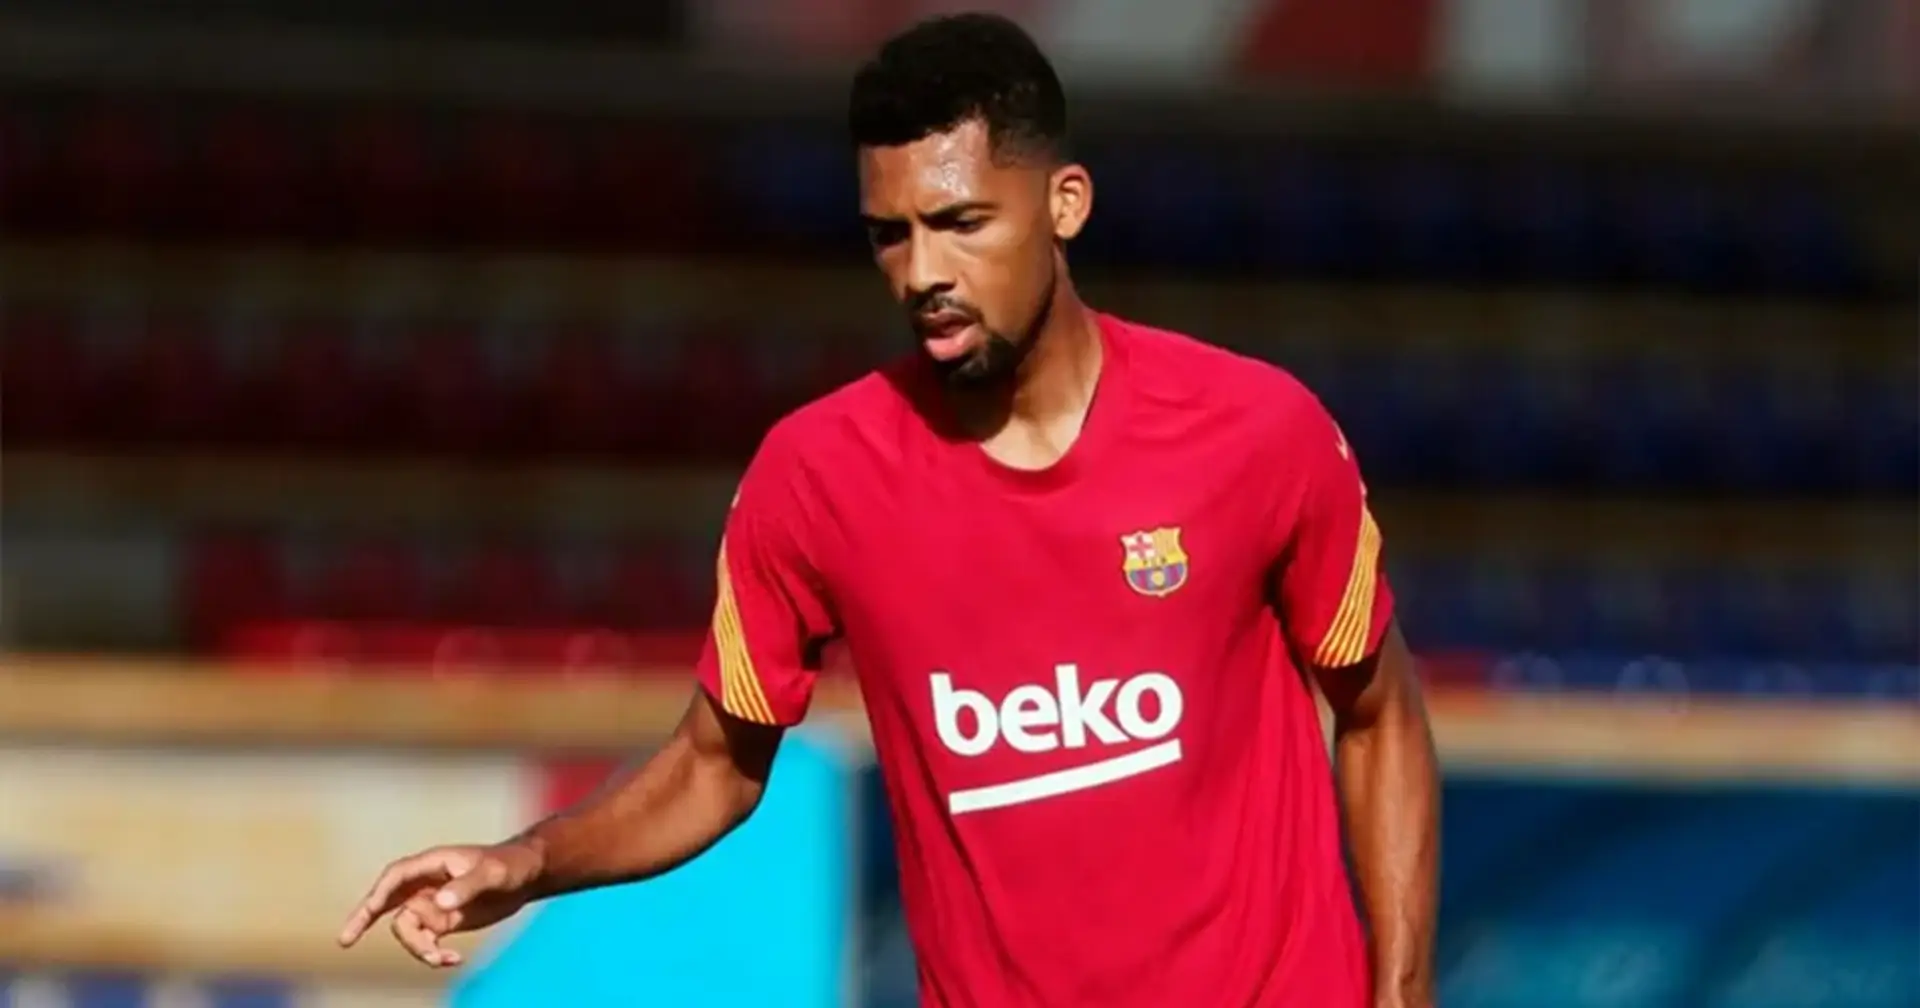 Matheus decidió quedarse en el Barça a pesar de saber que no jugará (fiabilidad: 3 estrellas)